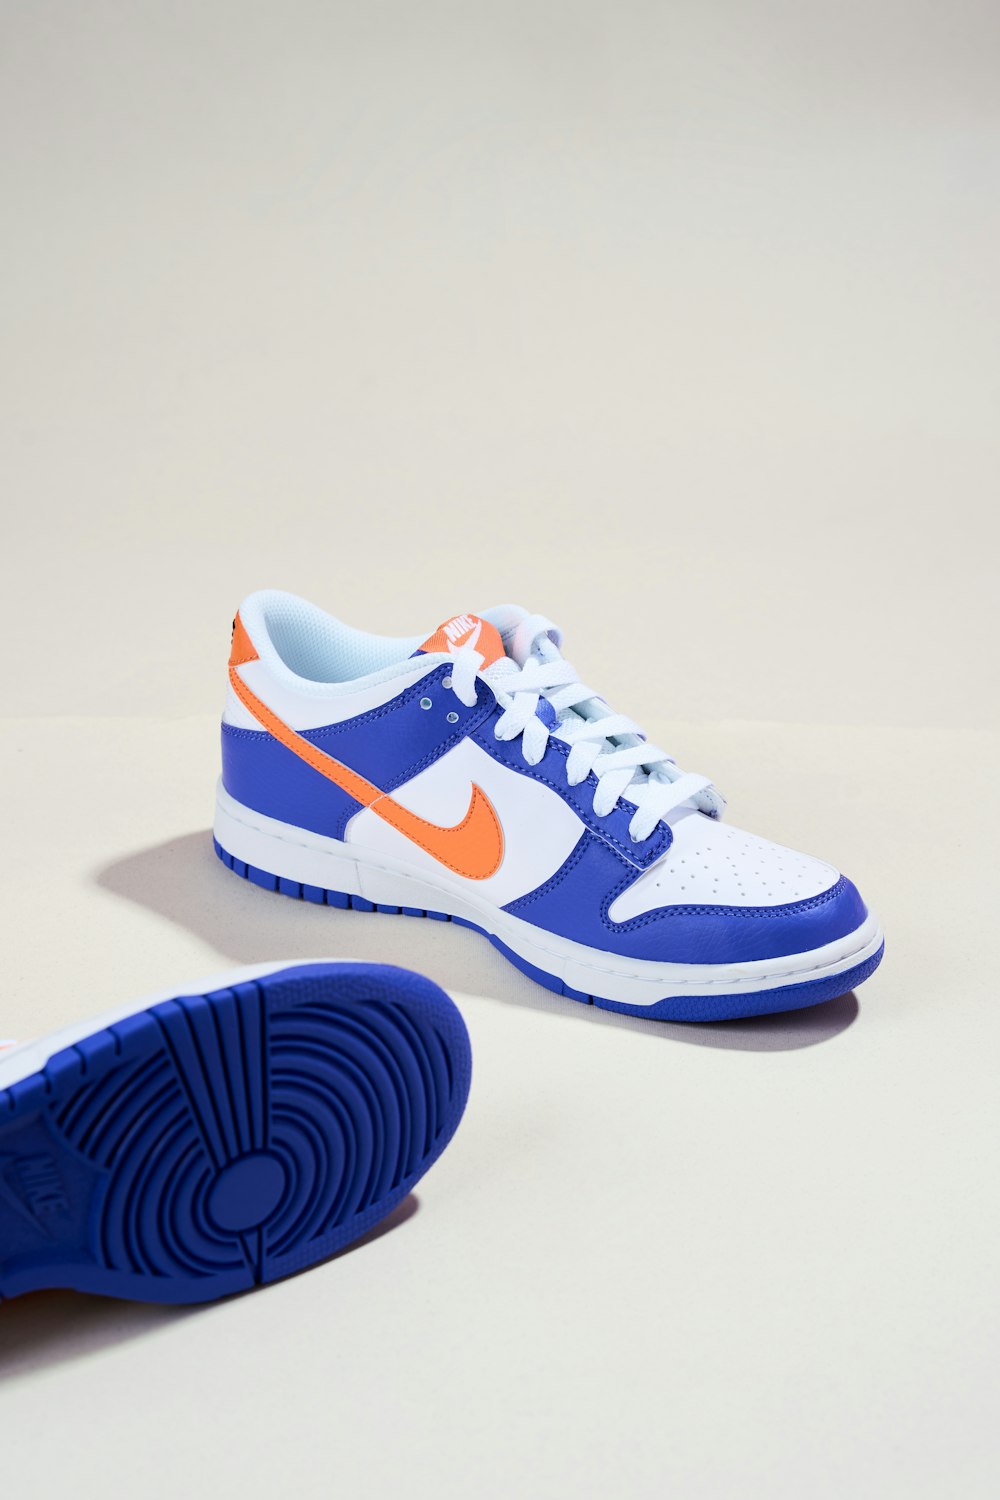 un par de zapatillas azules y naranjas sobre una superficie blanca